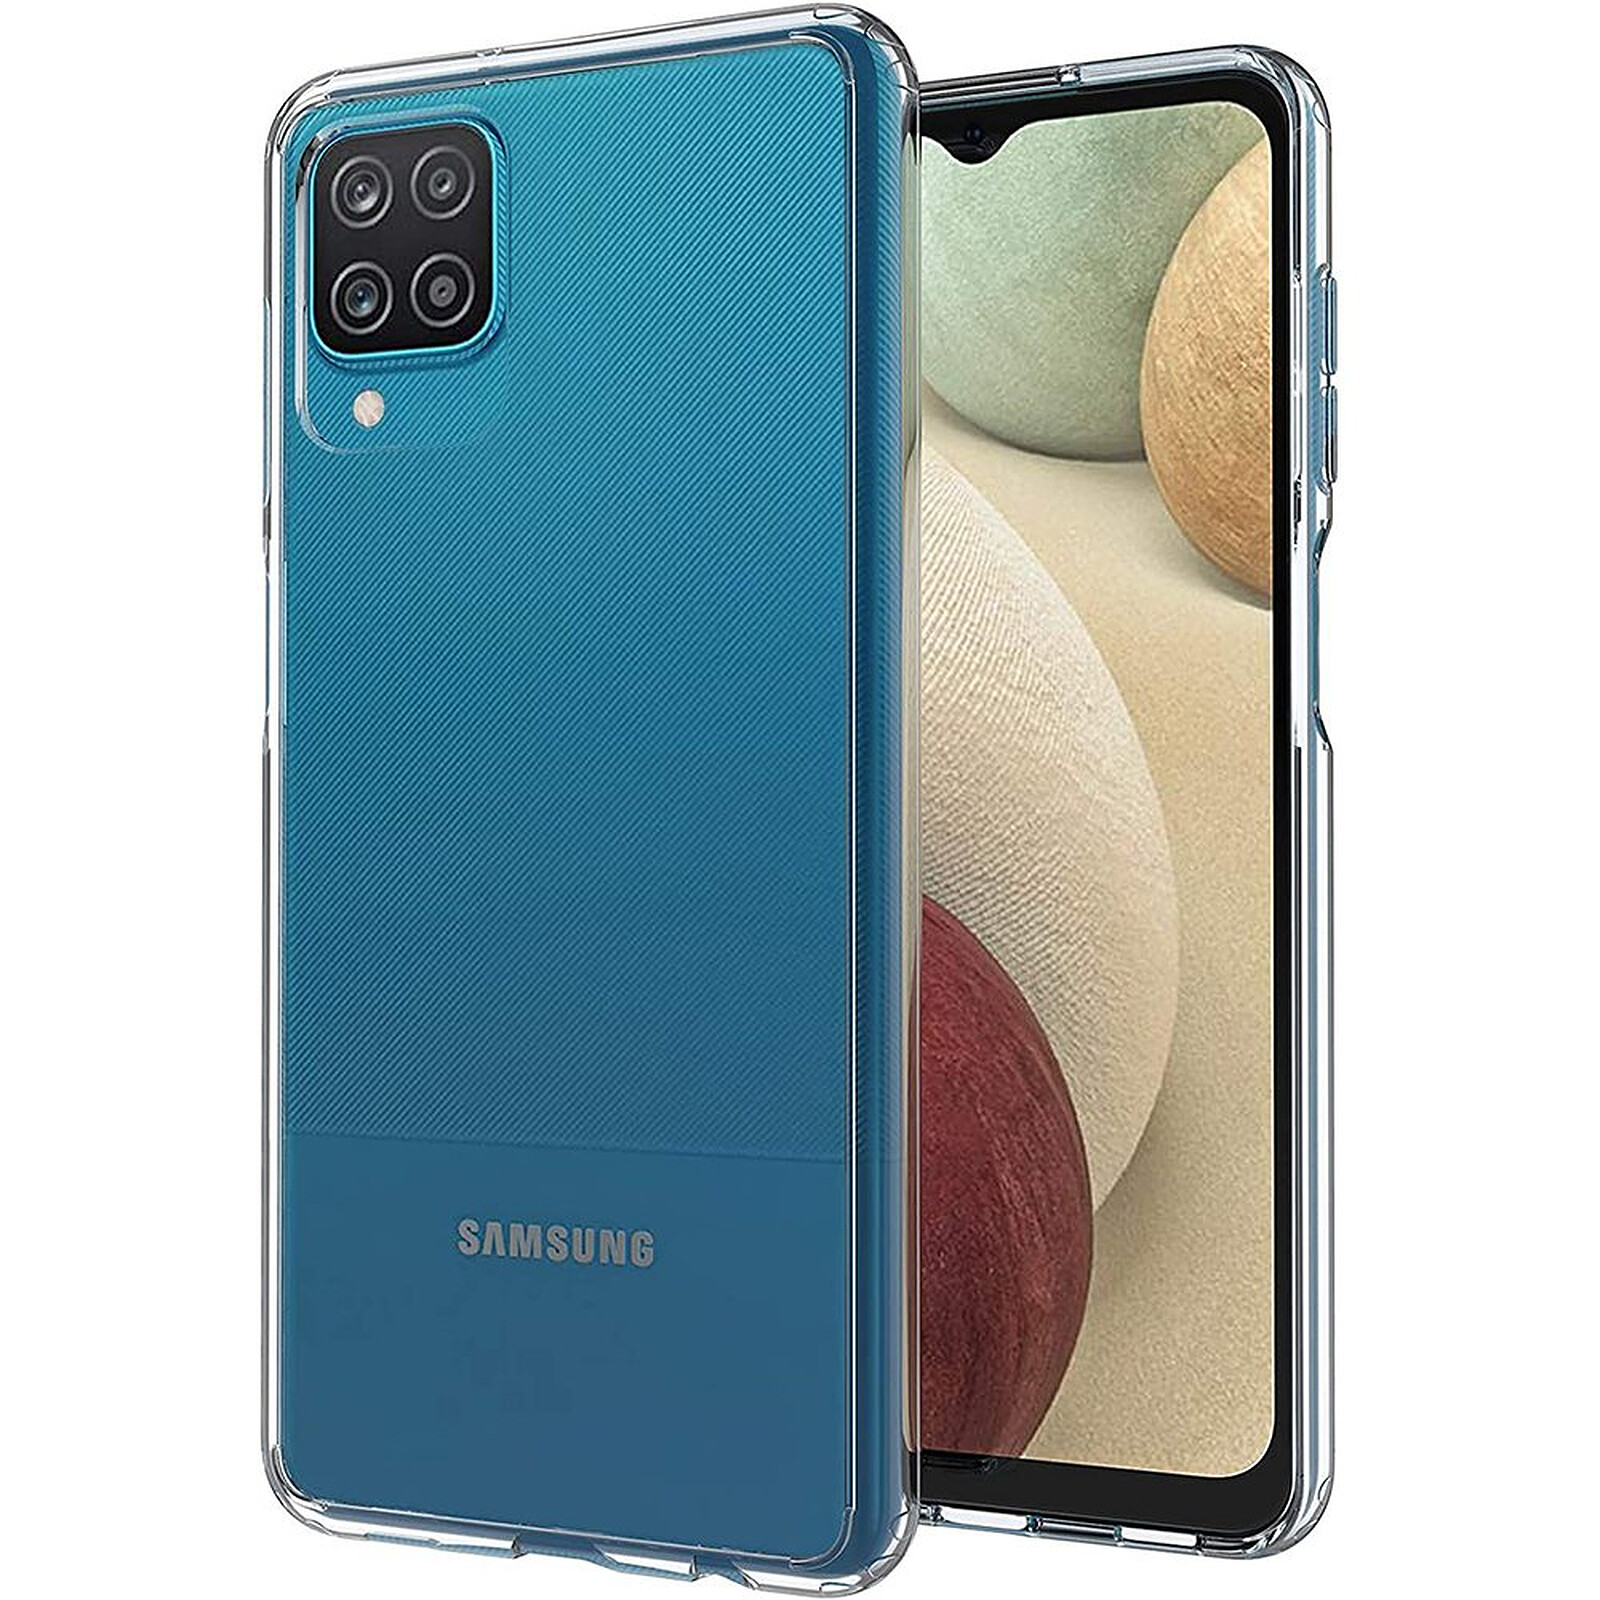 Motif mignon Pour fille Fine et flexible Coque de protection pour Samsung Galaxy A12 En TPU En silicone transparent Pour Samsung A12